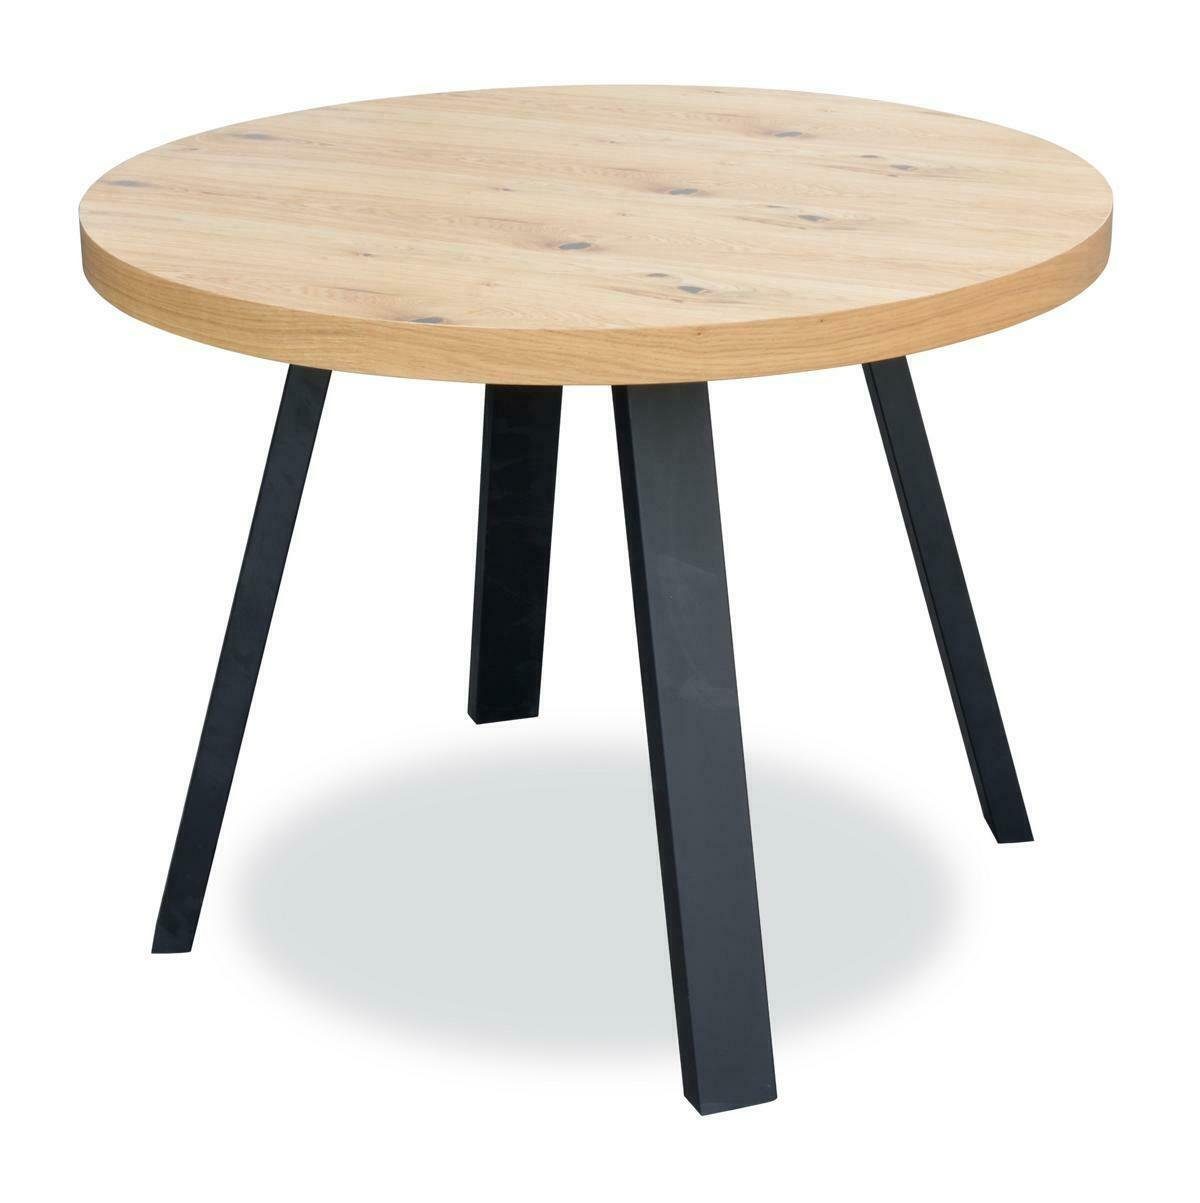 Big Esstisch, Konferenztisch Holztisch Esszimmer Tische Meeting JVmoebel Tisch Design